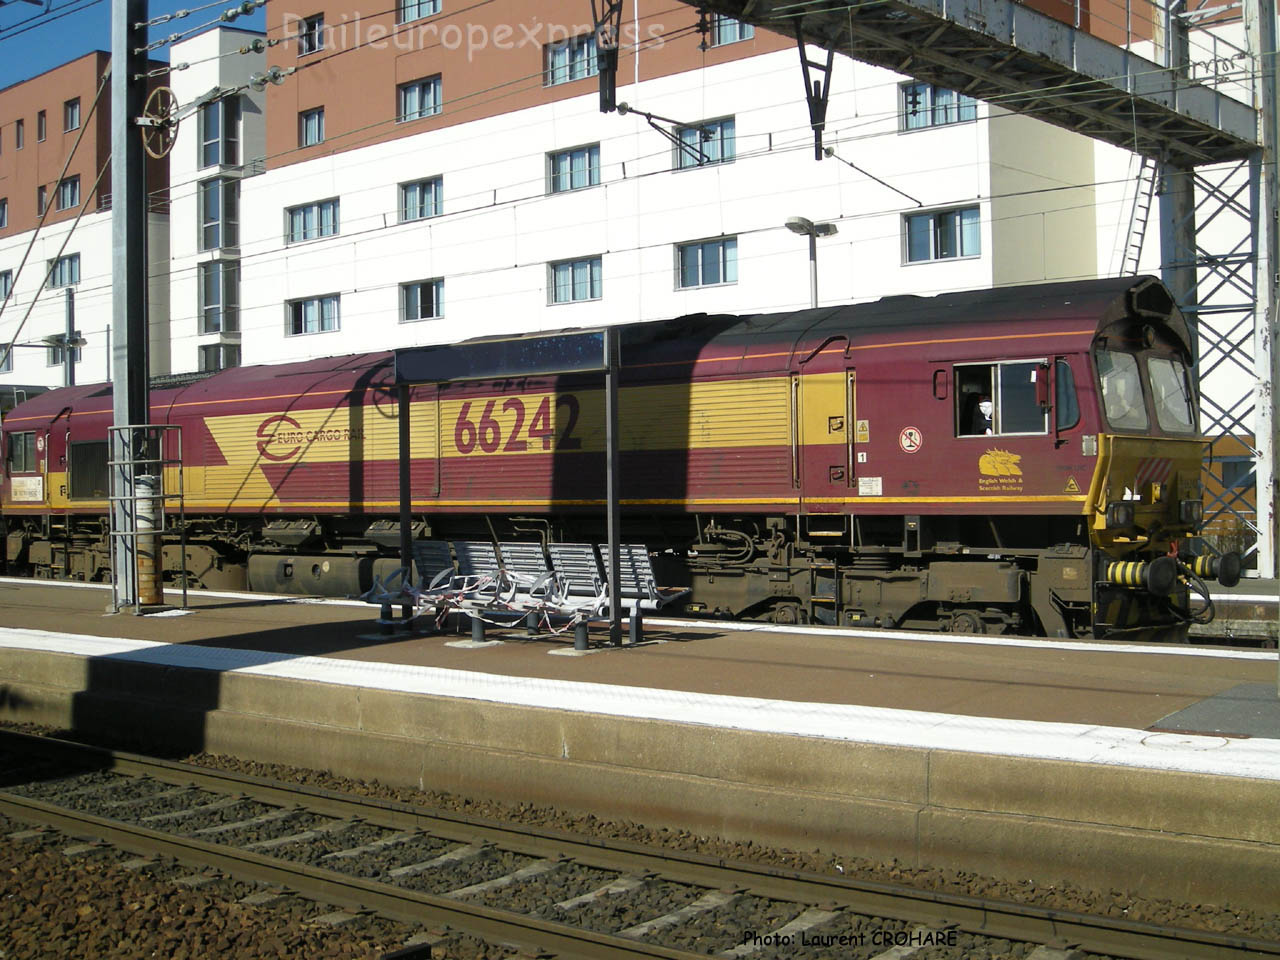 Class 66 242 ECR